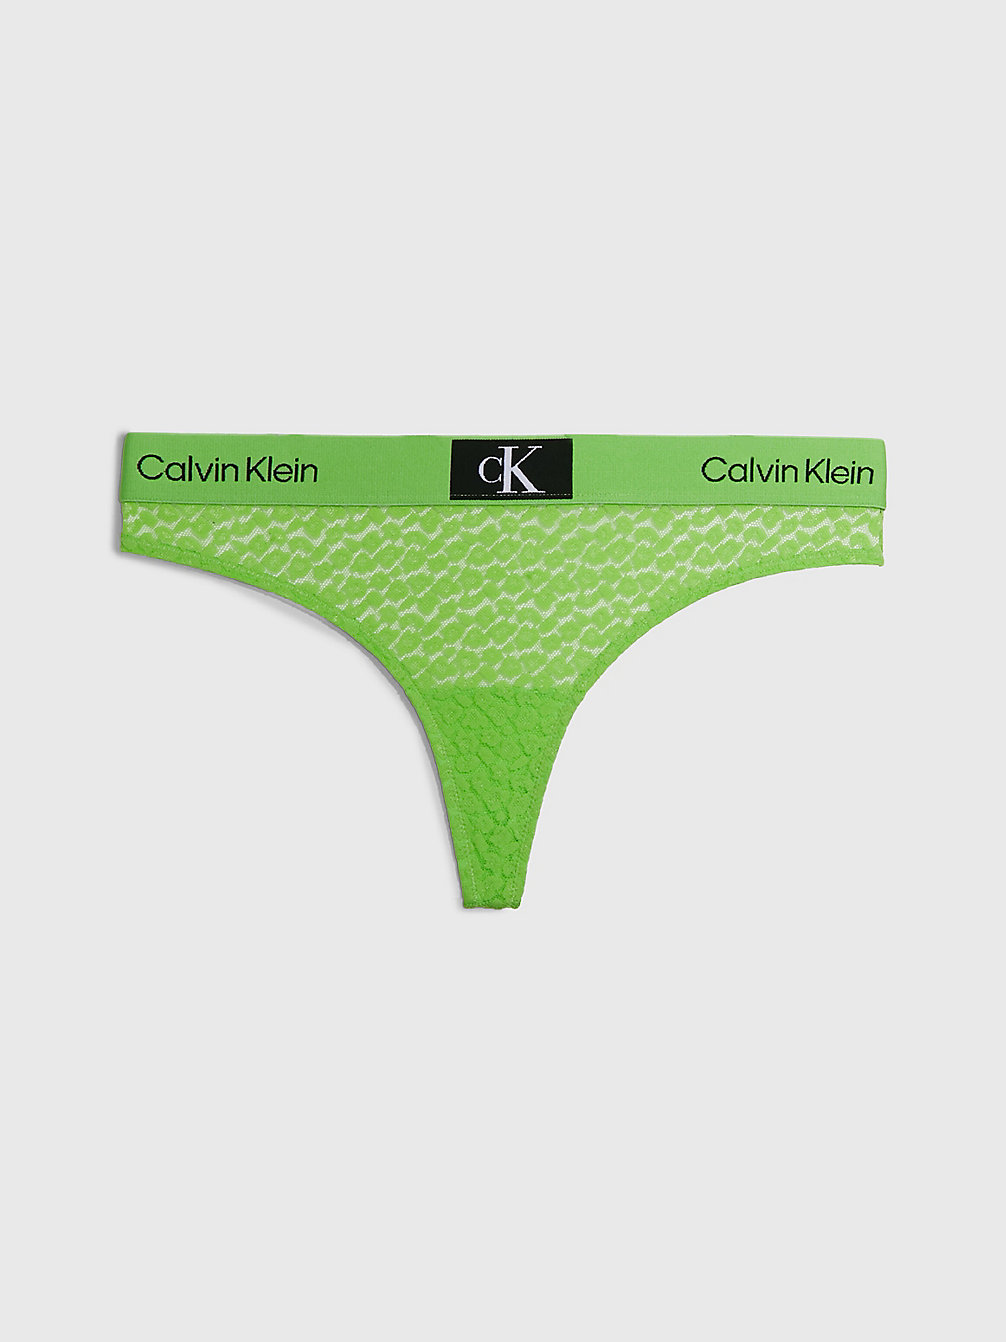 FABULOUS GREEN String Mit Spitze - Ck96 undefined Damen Calvin Klein